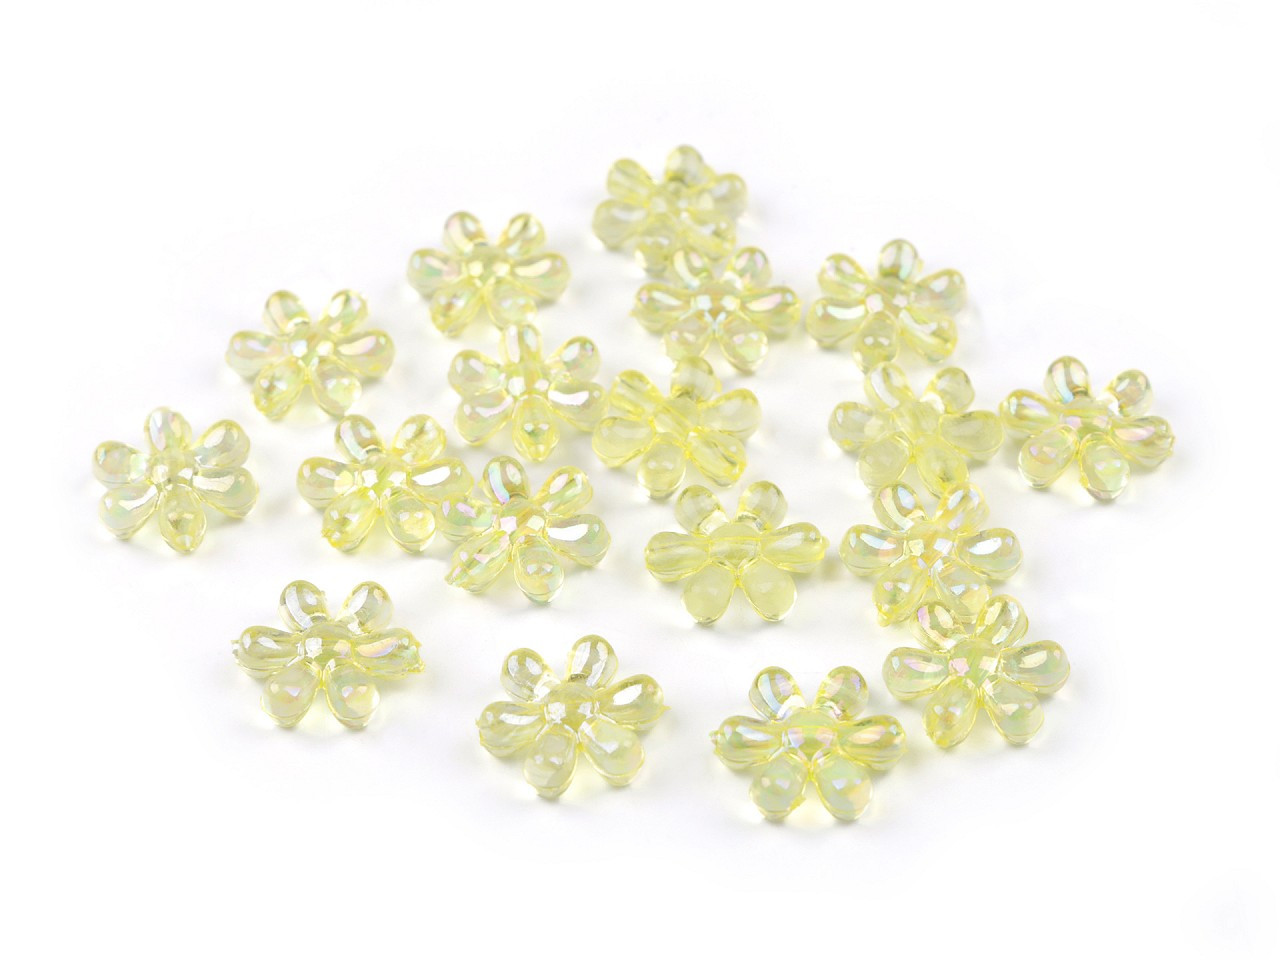 Plastové korálky s AB efektem květ Ø17 mm, barva 2 žlutá